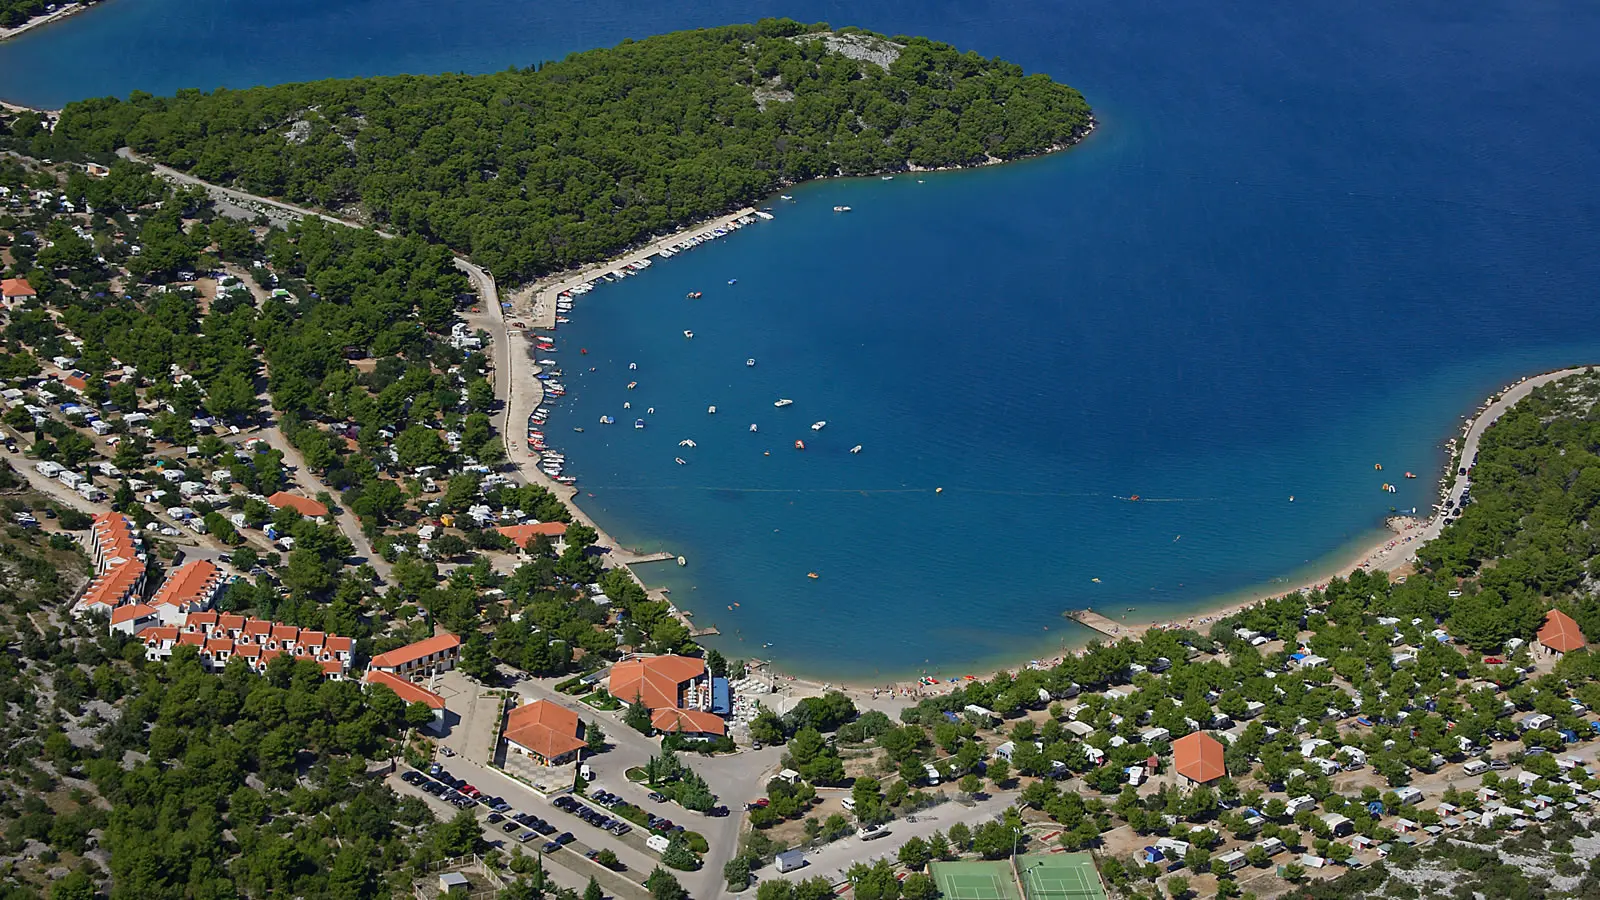 Luftaufnahme des Ferienresorts Jezera in Murter mit einem halbmondförmigen Strand, gesäumt von Booten, Mobilheimen im Grünen und klarem, blauen Wasser.